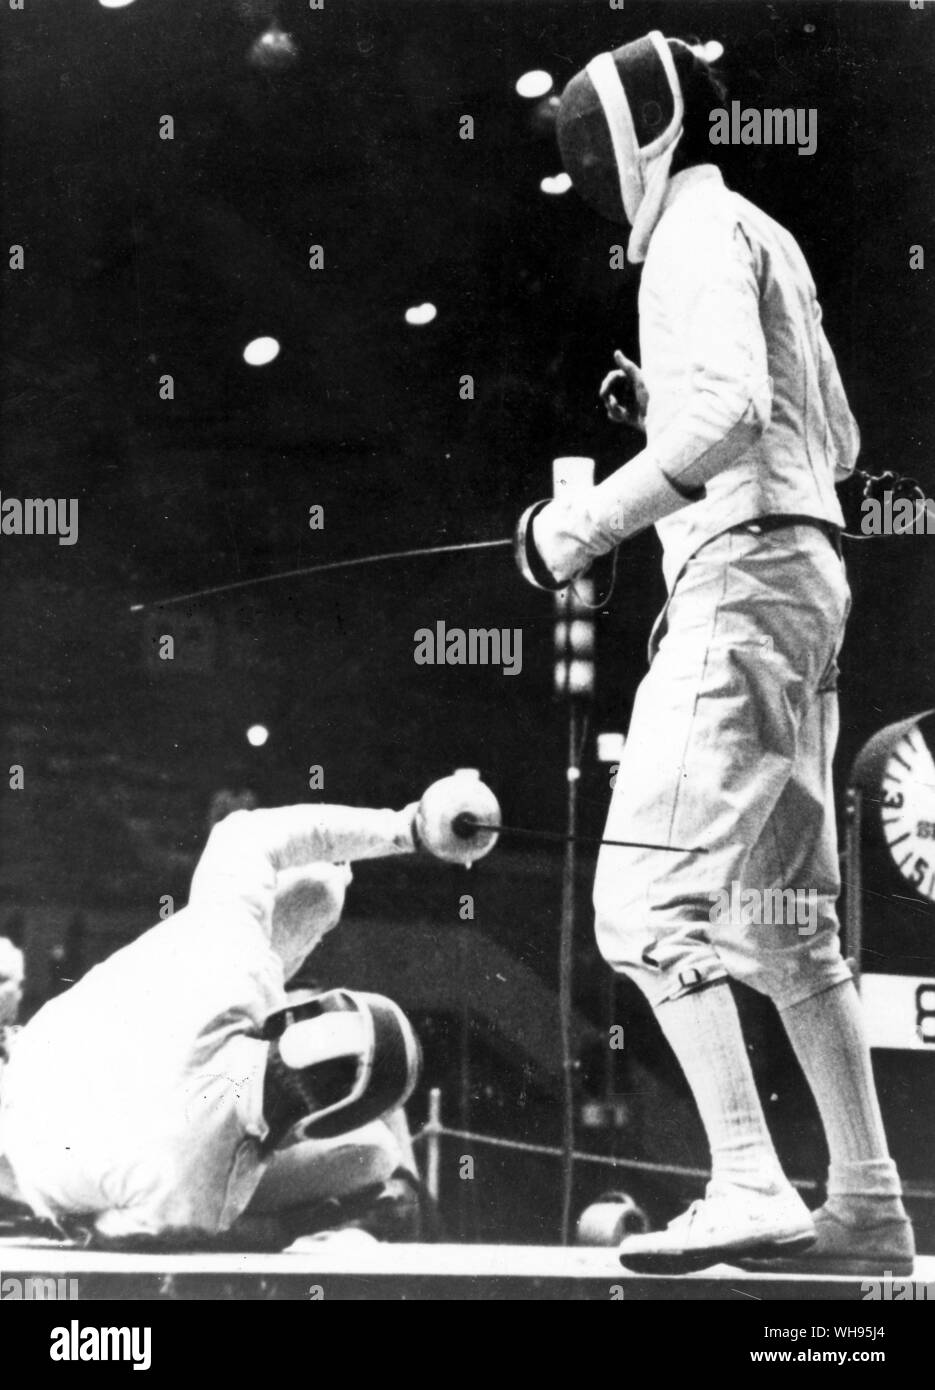 Giappone Tokyo Olimpiadi 1964: Grigory Kriss cade a terra durante le finali di uomini individuale epee caso contro la Gran Bretagna, Bill Hoskyns. Kriss (URSS) ha vinto la medaglia d'oro e Hoskyns, l'argento. Foto Stock